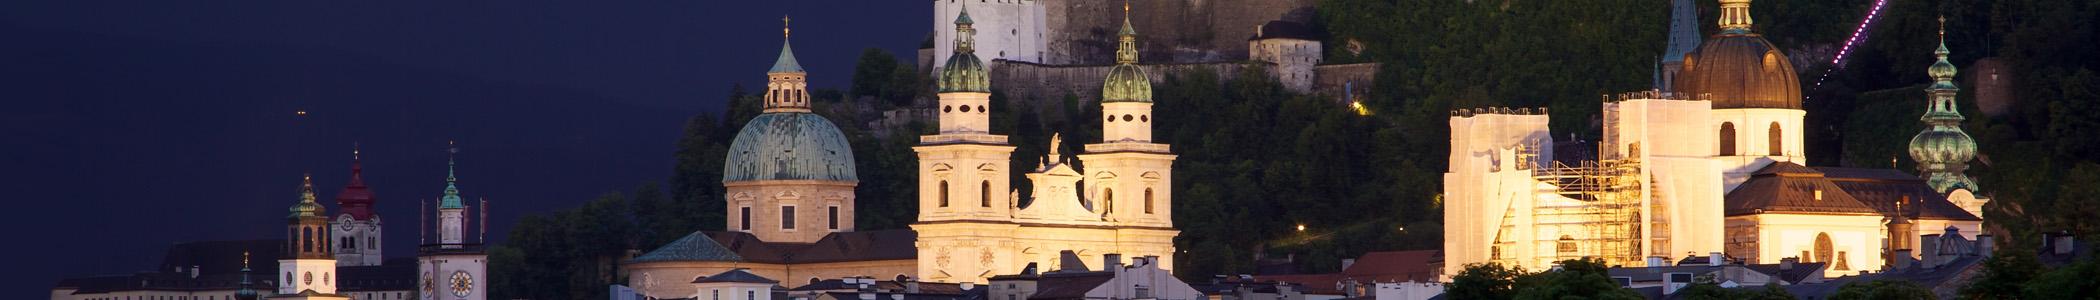 Banner image for Salzburg on GigsGuide